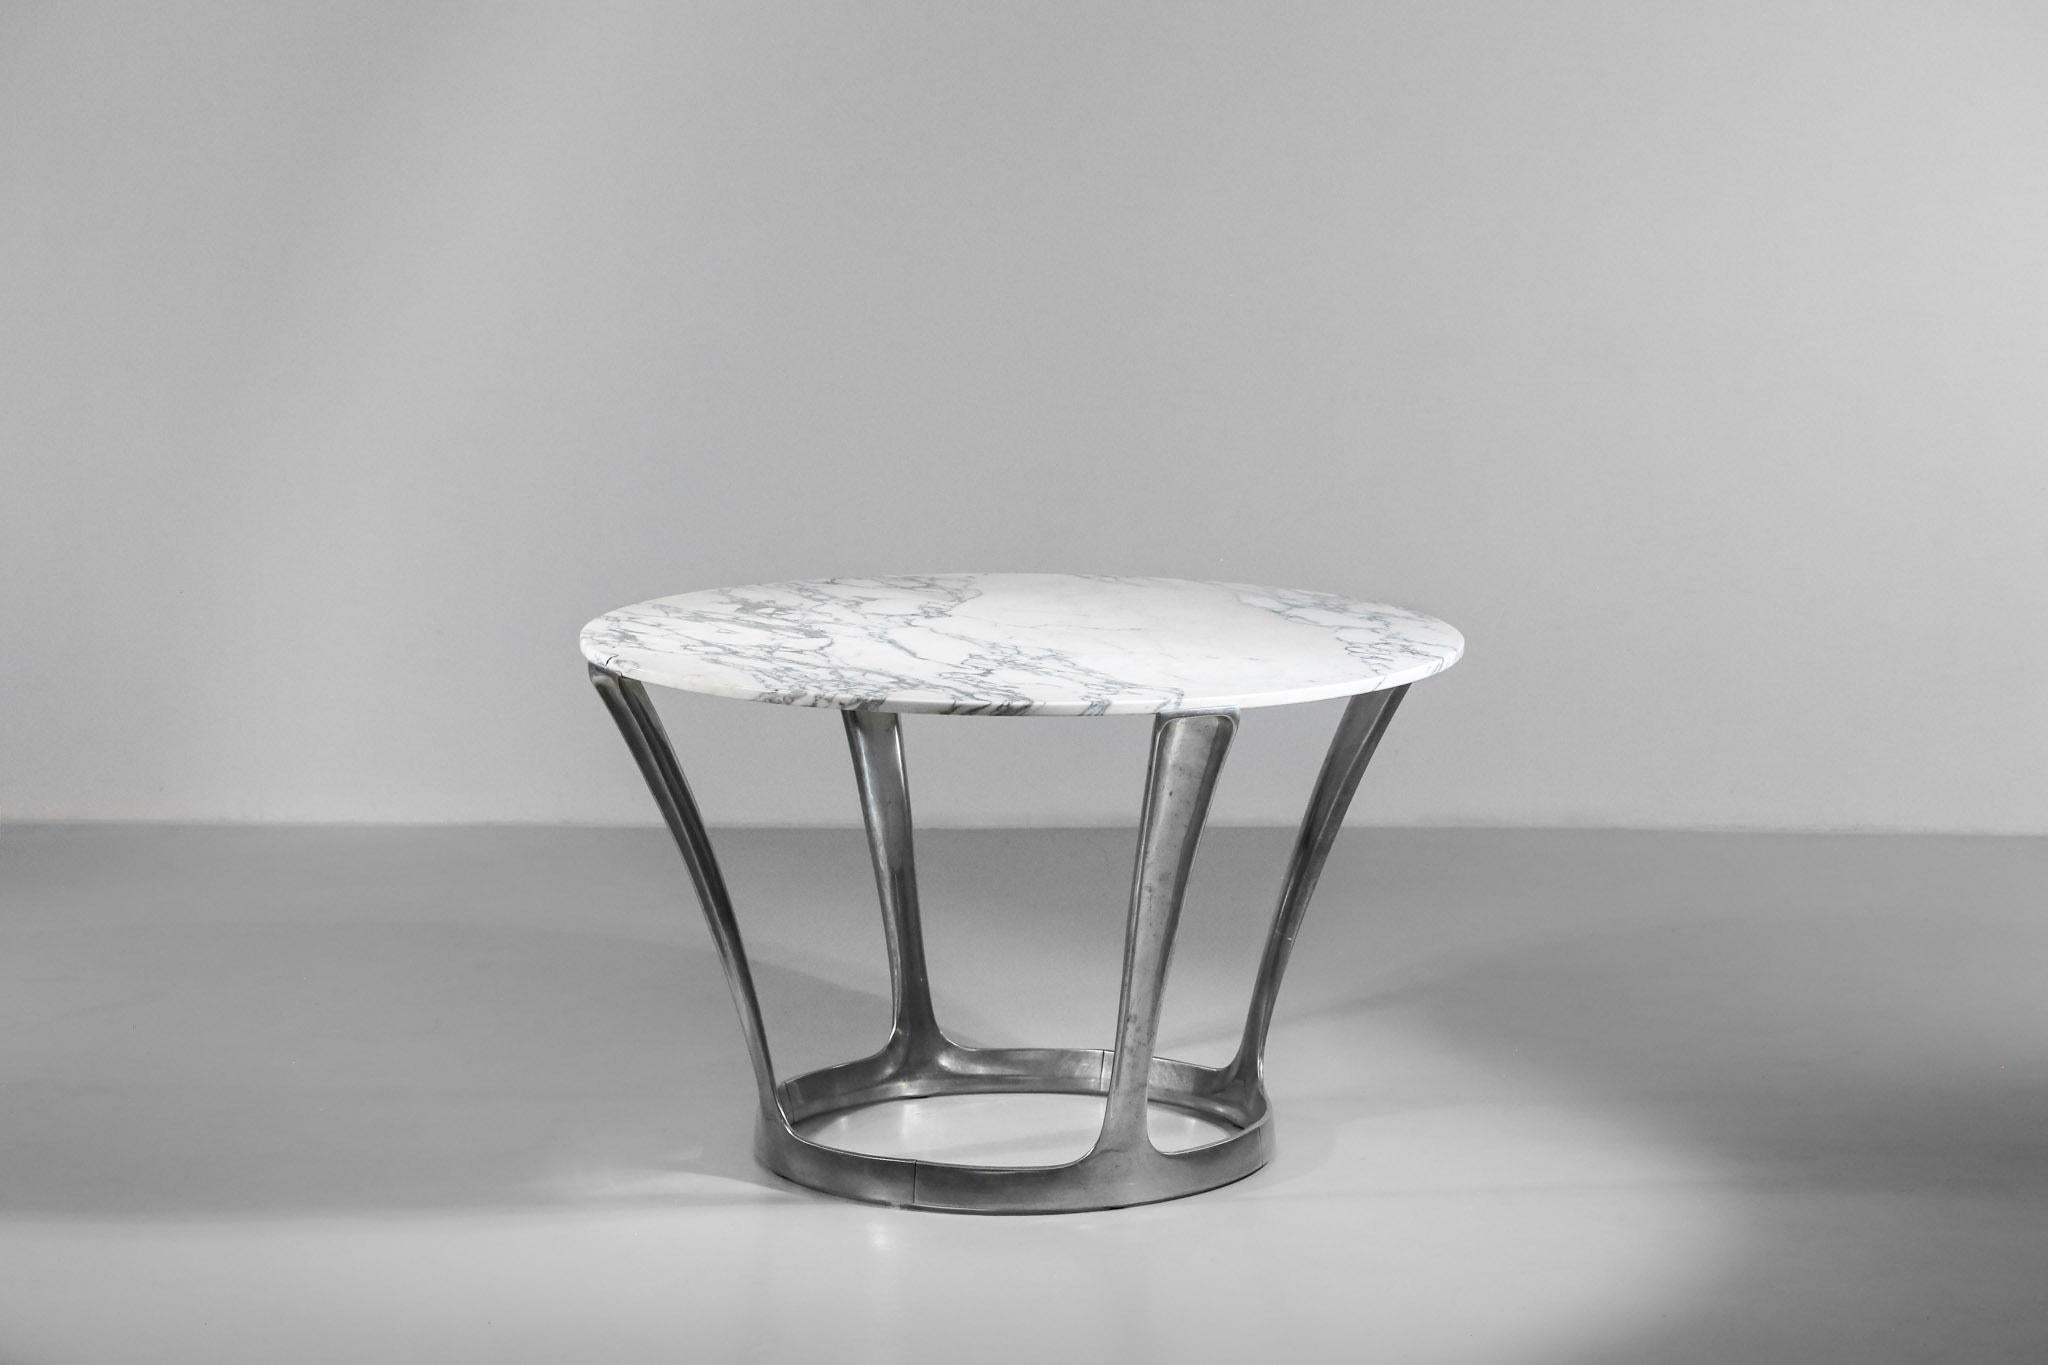 Très belle table conçue par Michel Charron dans les années 1970. Le plateau, réalisé en marbre de Carrare, a été poli. La structure est en aluminium moulé.